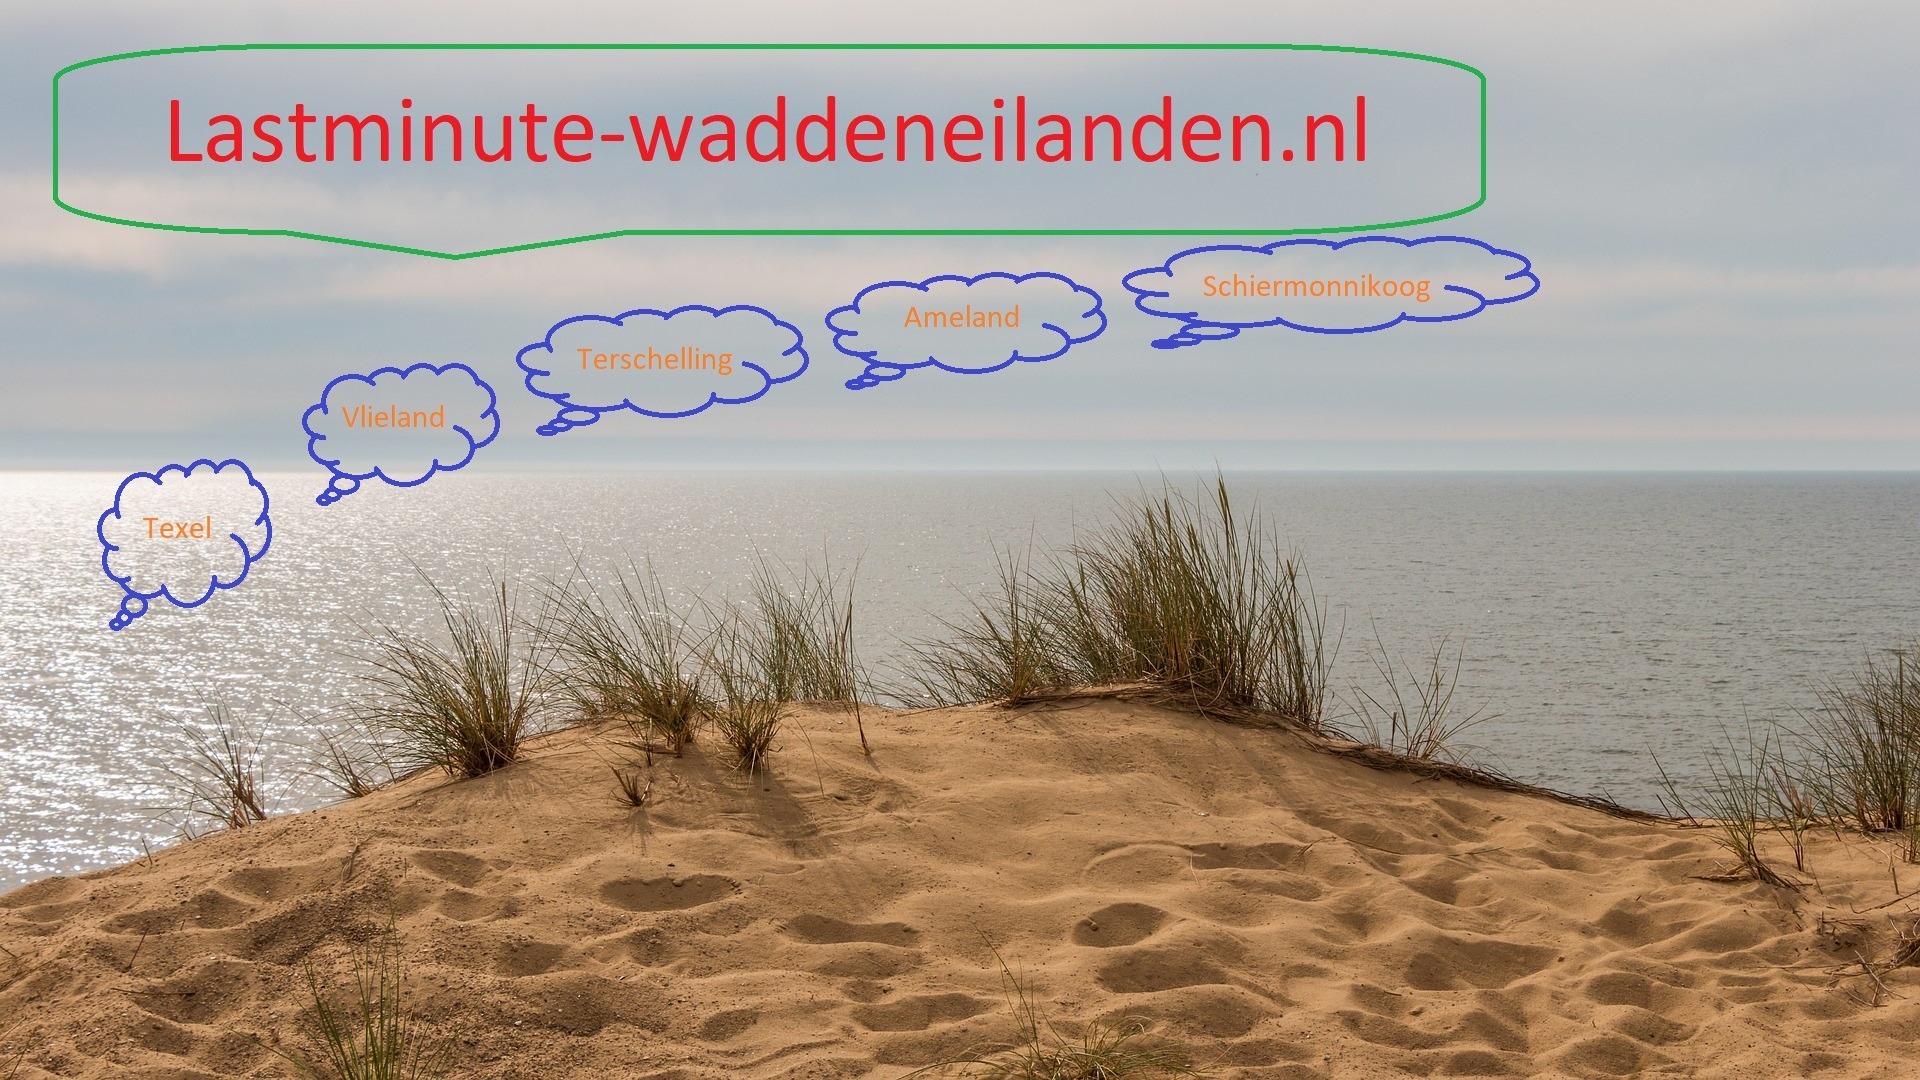 www.lastminute-waddeneilanden.nl